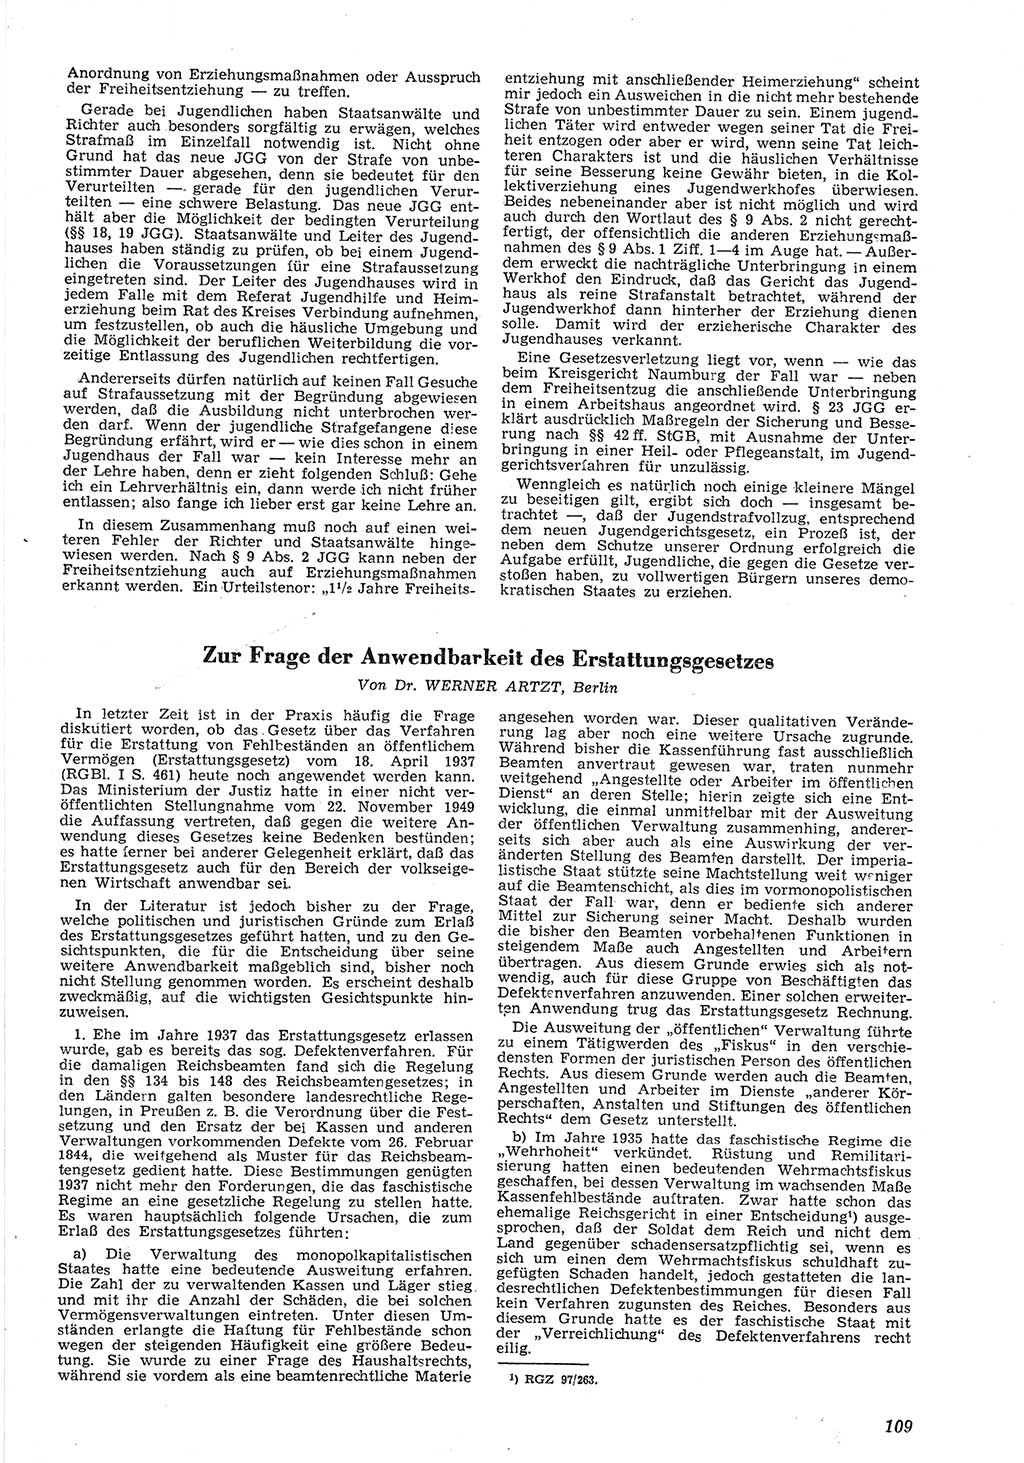 Neue Justiz (NJ), Zeitschrift für Recht und Rechtswissenschaft [Deutsche Demokratische Republik (DDR)], 8. Jahrgang 1954, Seite 109 (NJ DDR 1954, S. 109)